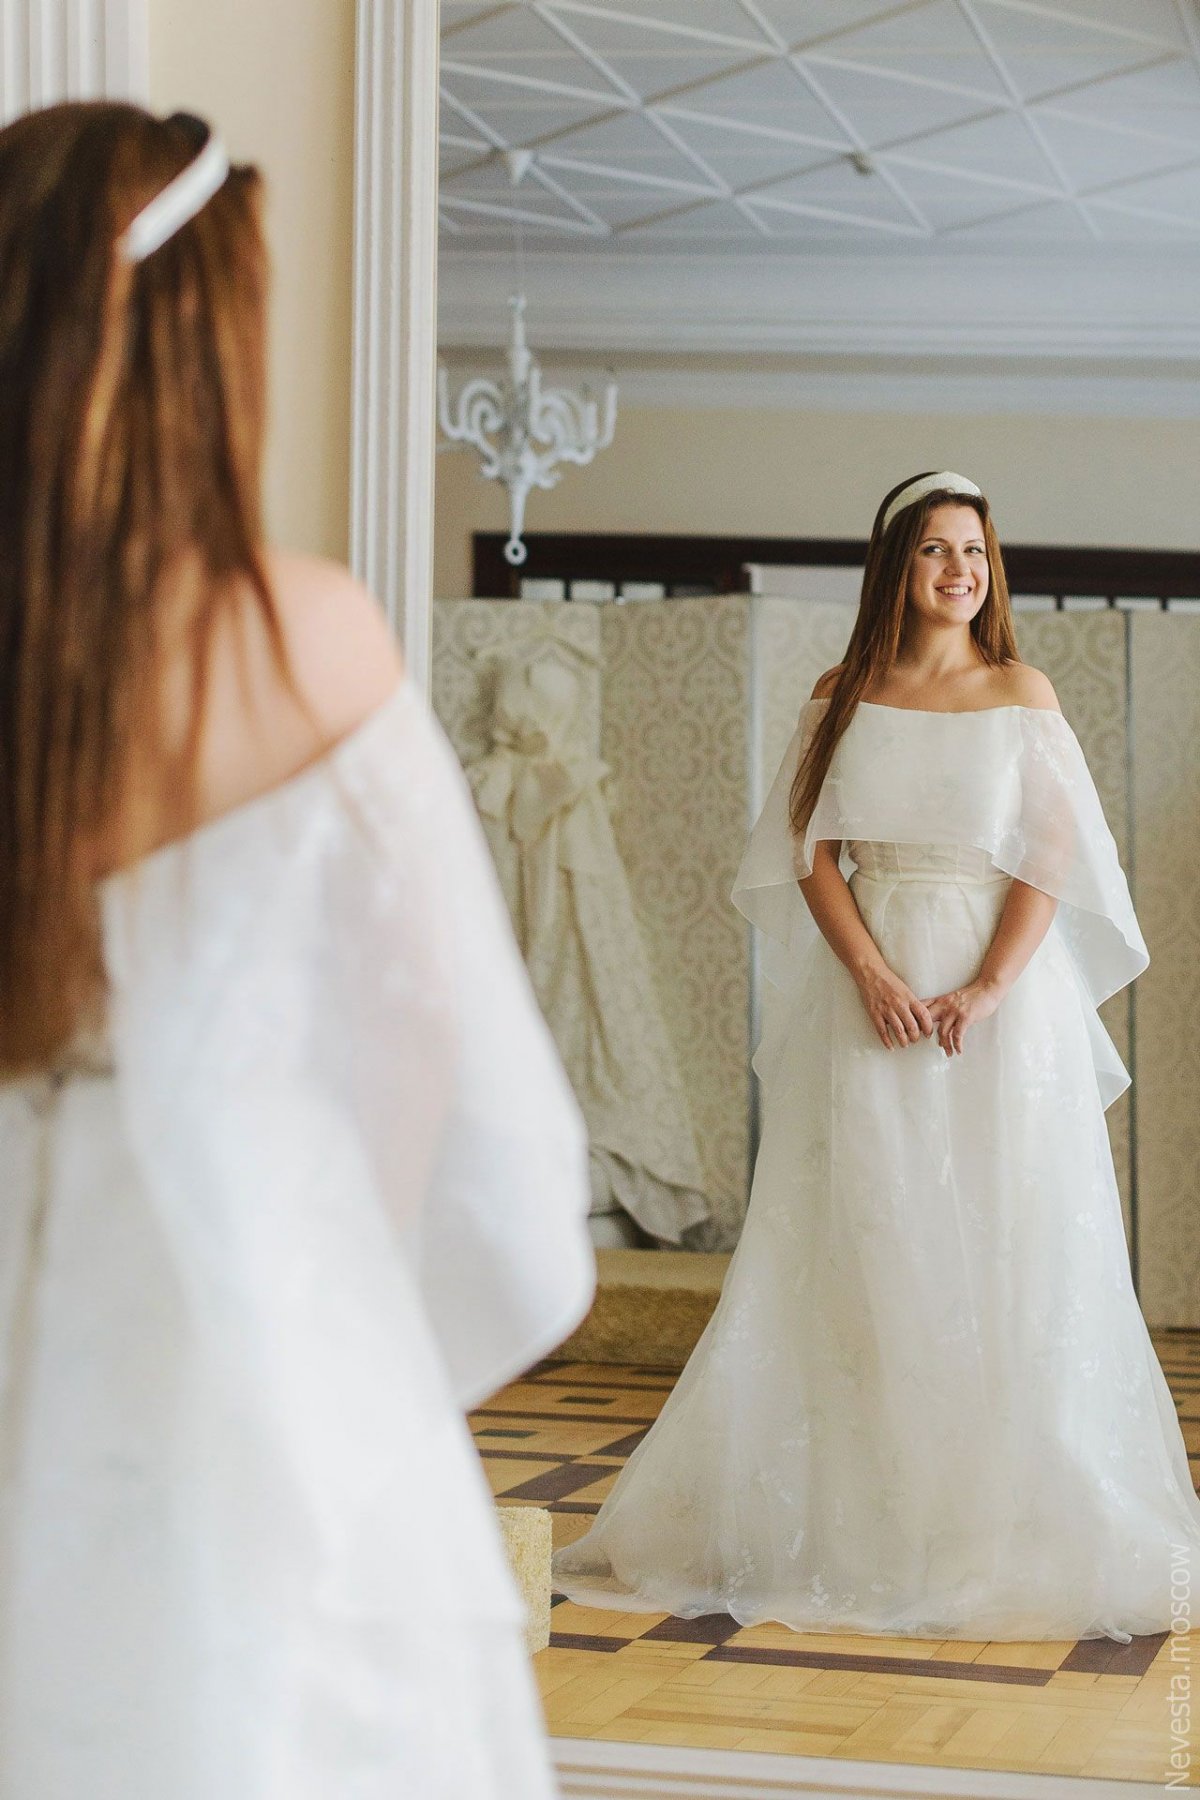 Анастасия Денисова примеряет свадебное платье